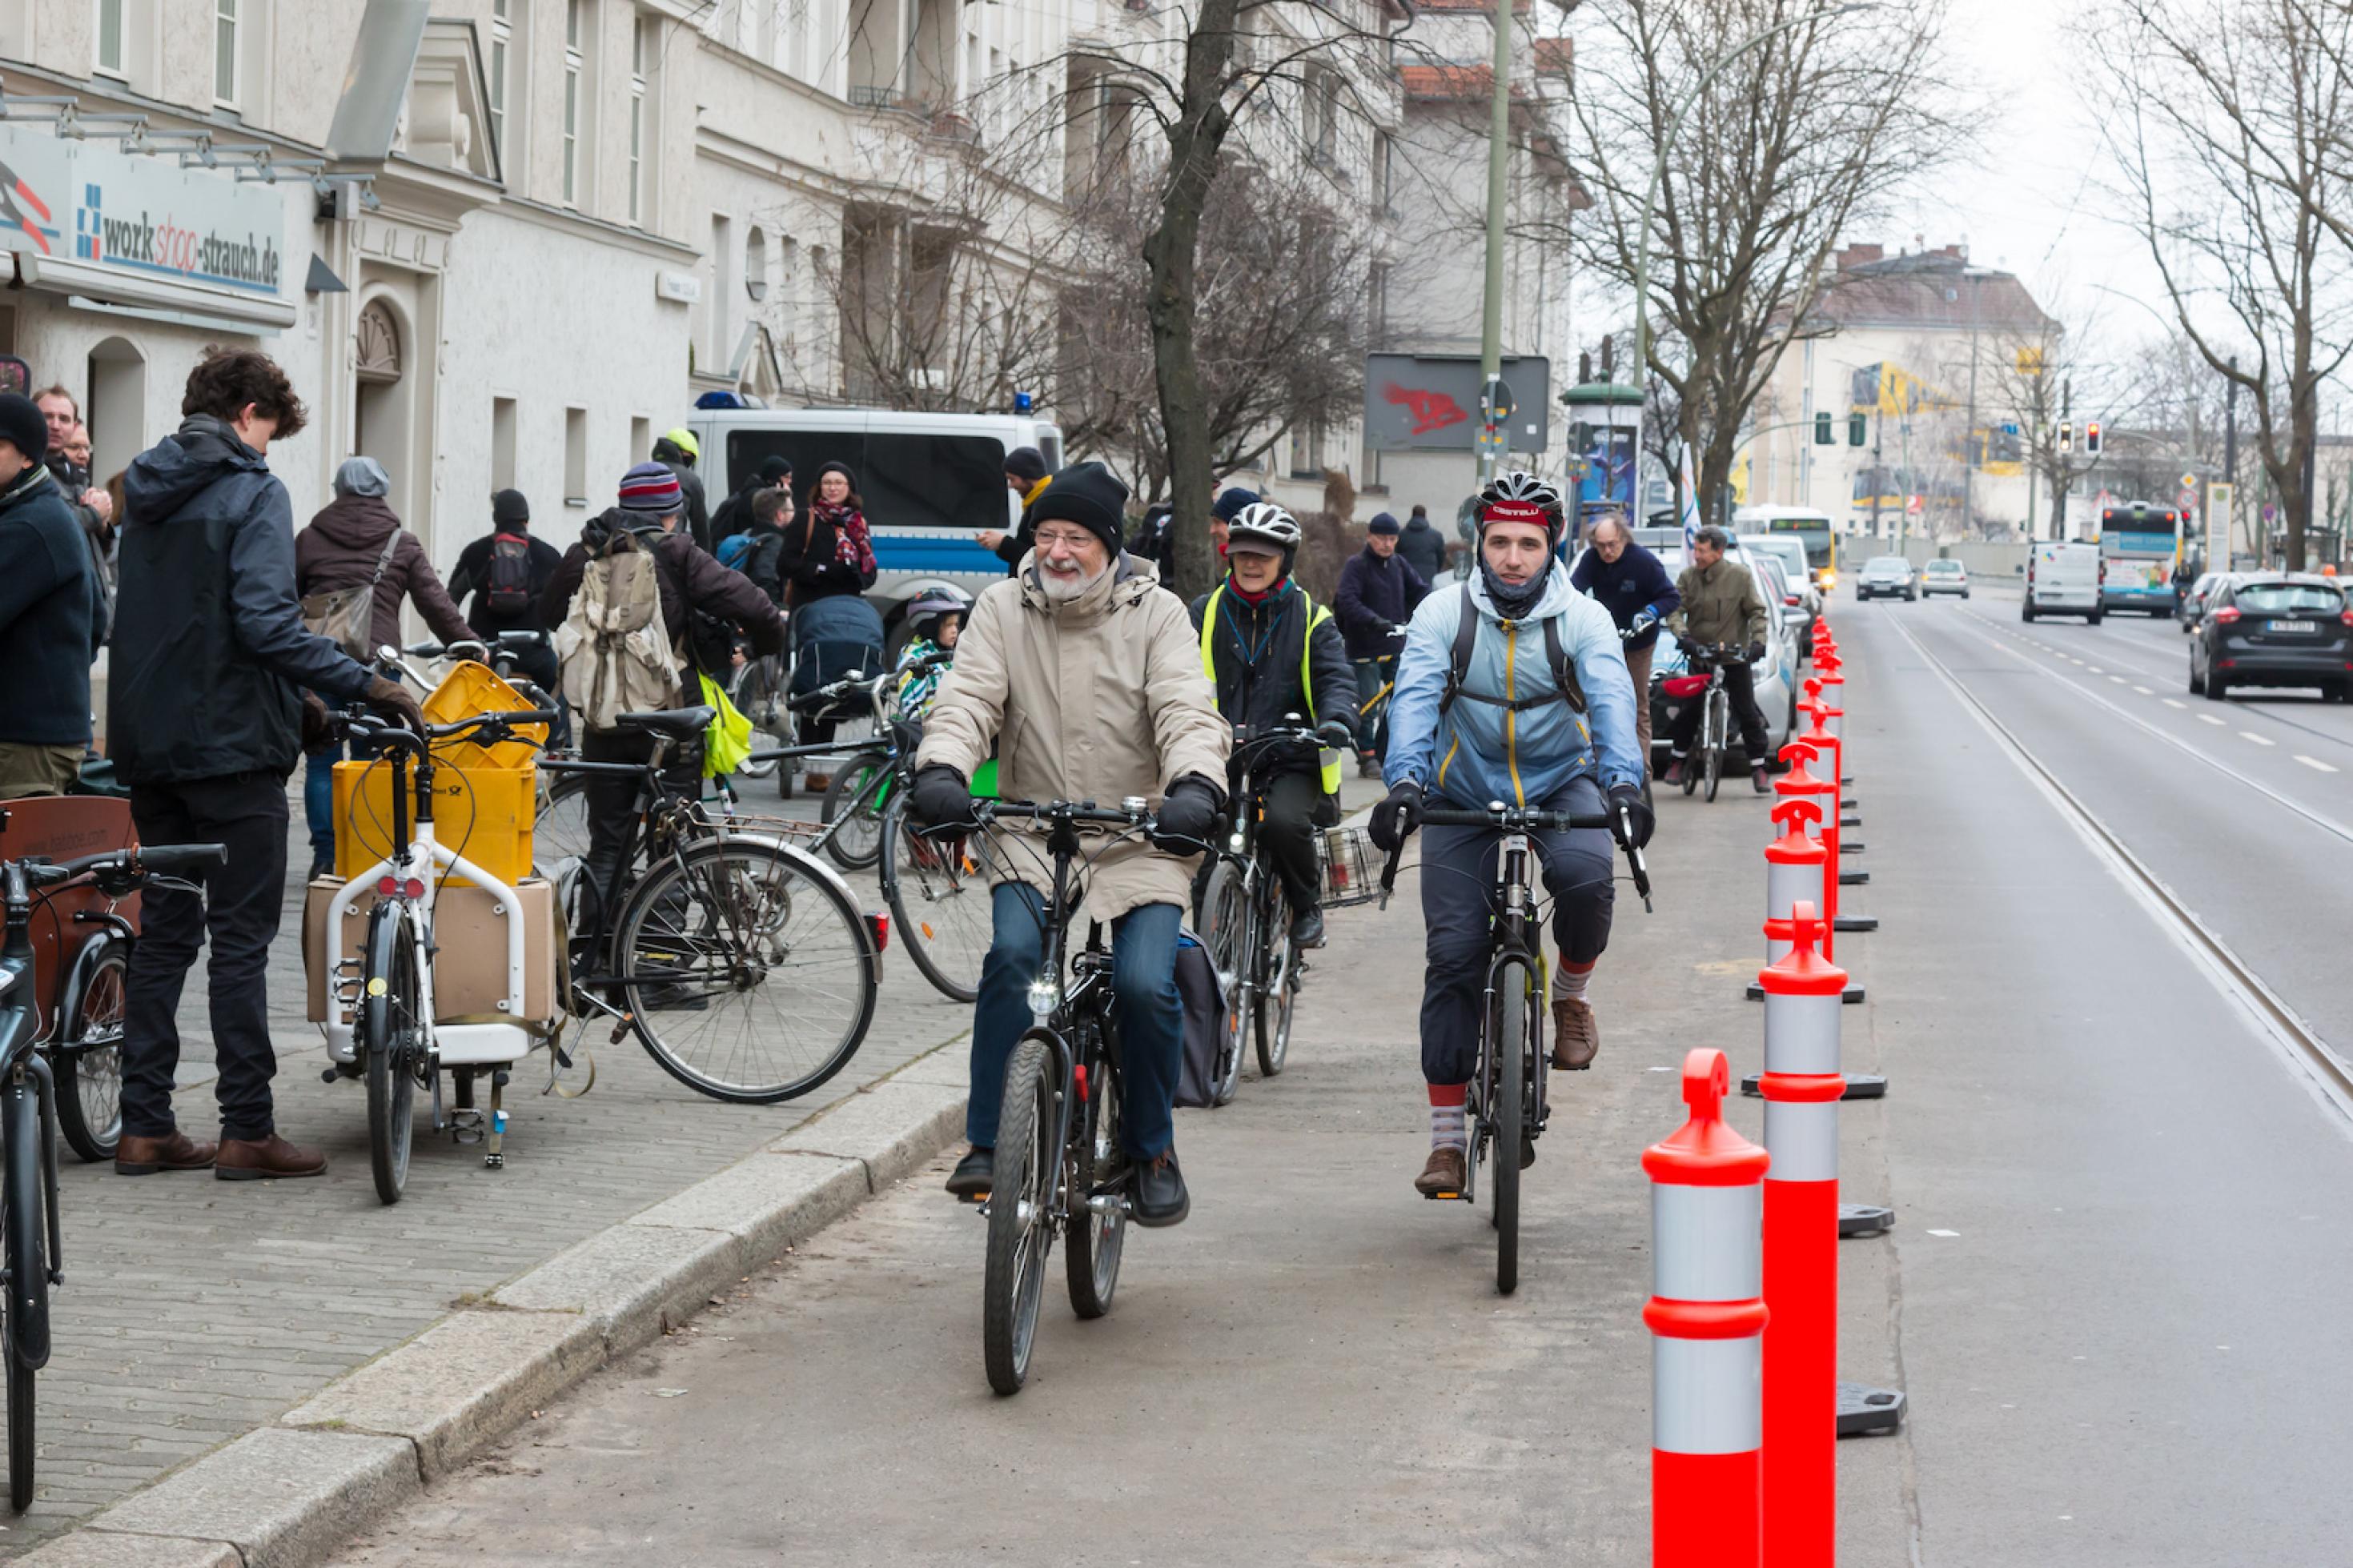 Mehrere Radfahrer fahren in Richtung Kamera auf einer gesicherten Spur. Auf dem Bürgersteig stehen weitere Menschen mit ihren Fahrrädern.